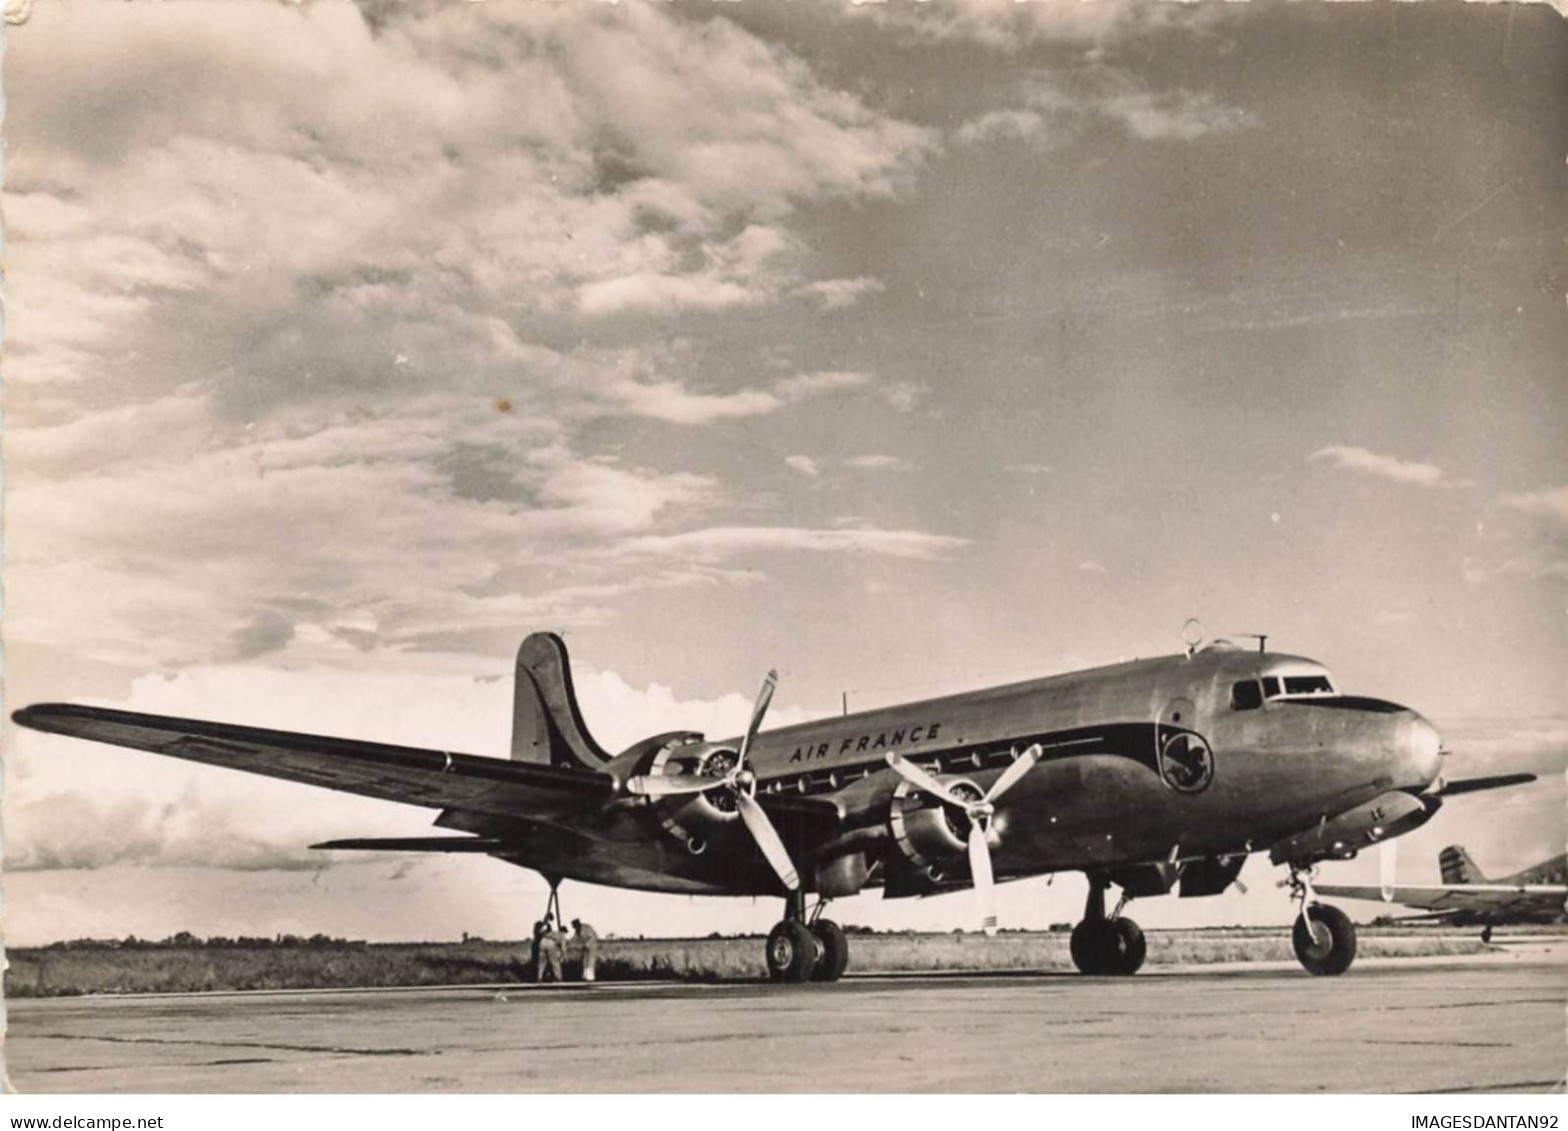 AVIATION AL#AL00497 PHOTO AVION DOUGLAS DC SKYMASTER EN SERVICE SUR LES LIGNES AIR FRANCE - 1939-1945: 2a Guerra